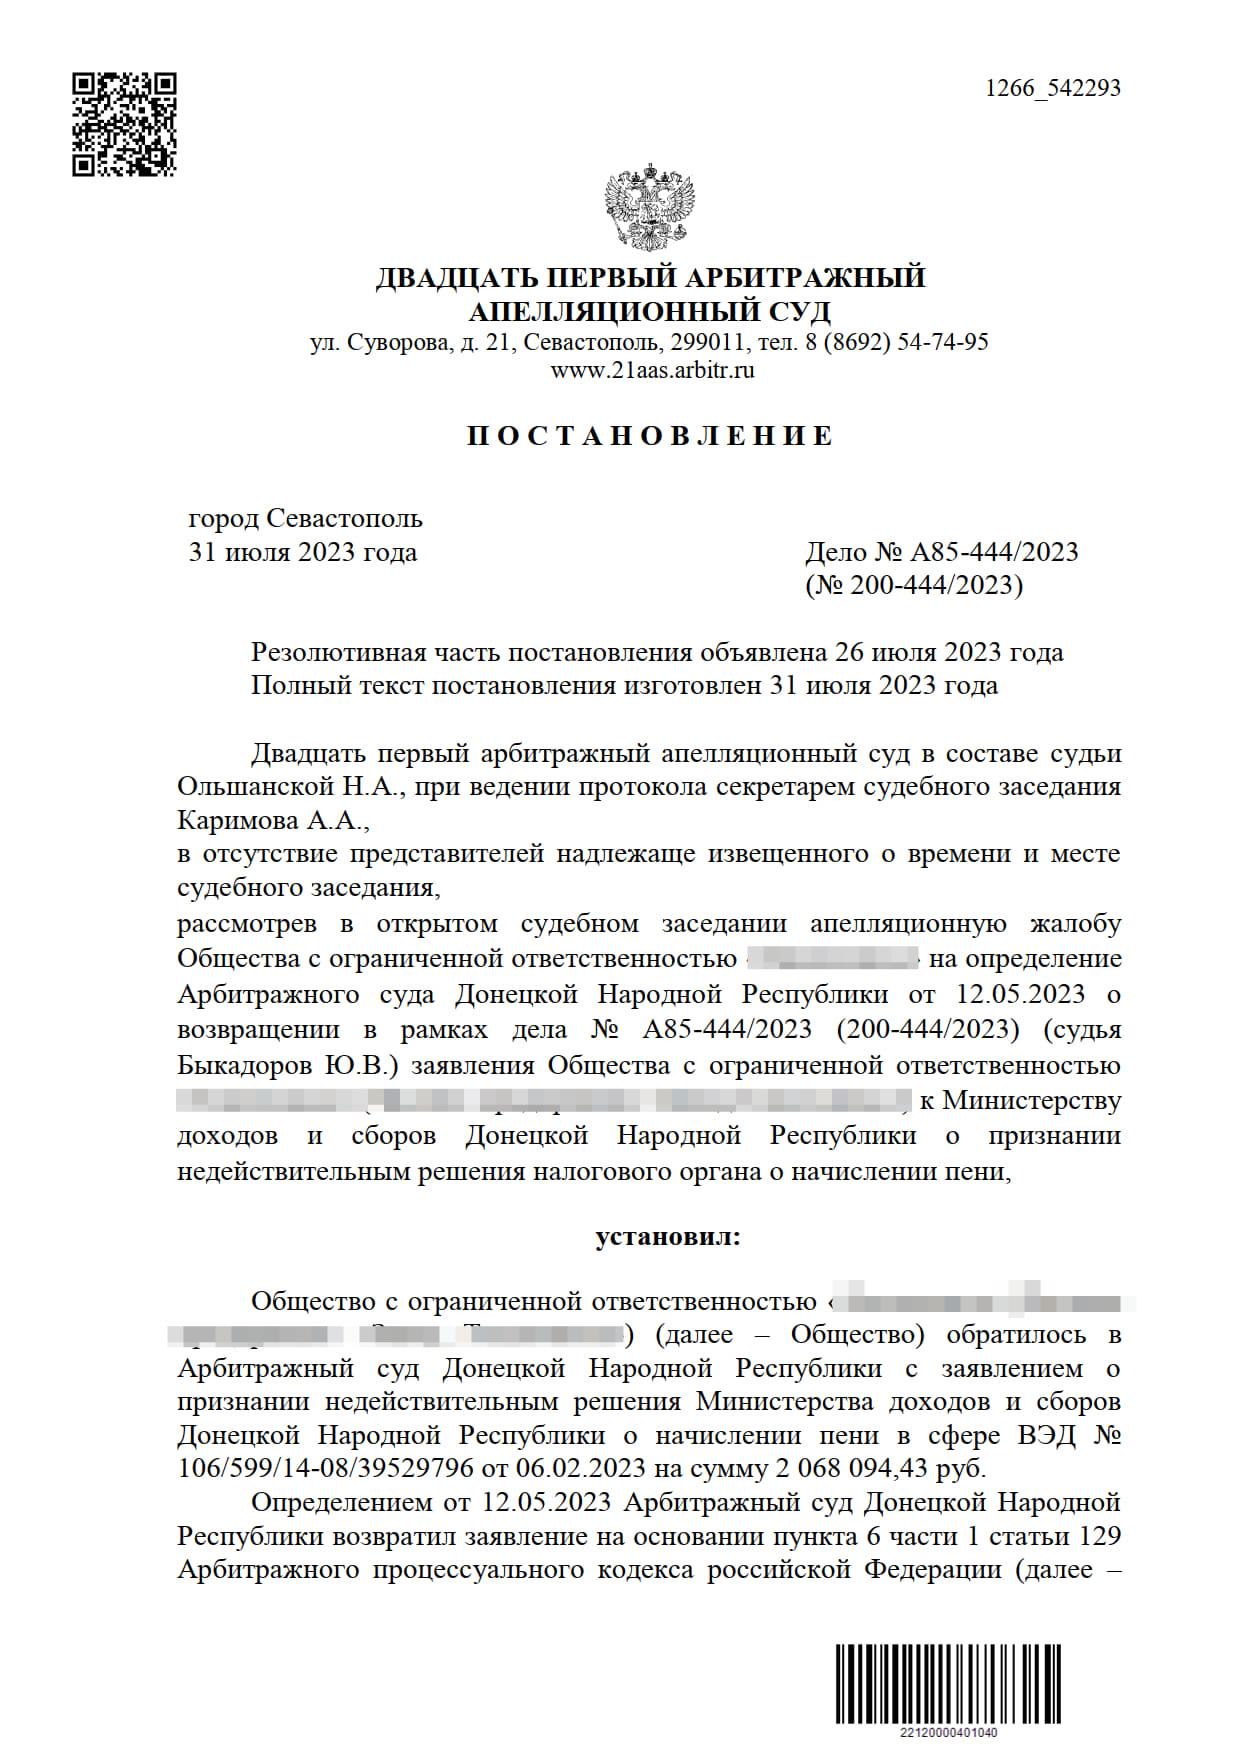 Обжалование решения суда о возврате иска ДНР